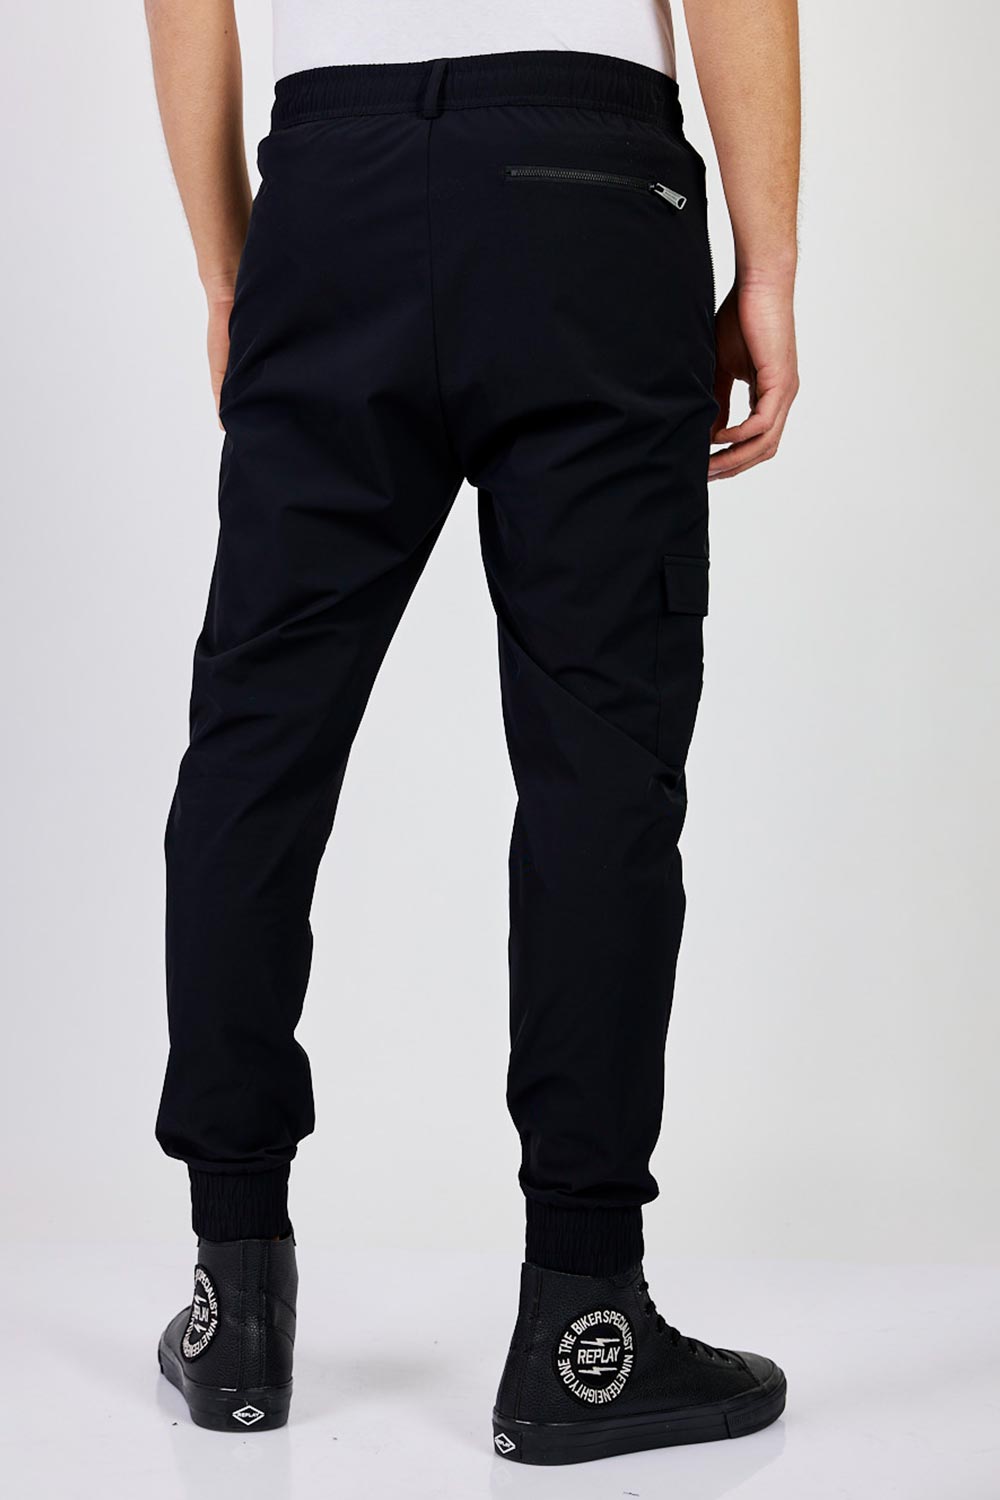 ריפליי מכנסי דגמ"ח ניילון ארוכים בצבע שחור לגברים-Replay-S-נאקו